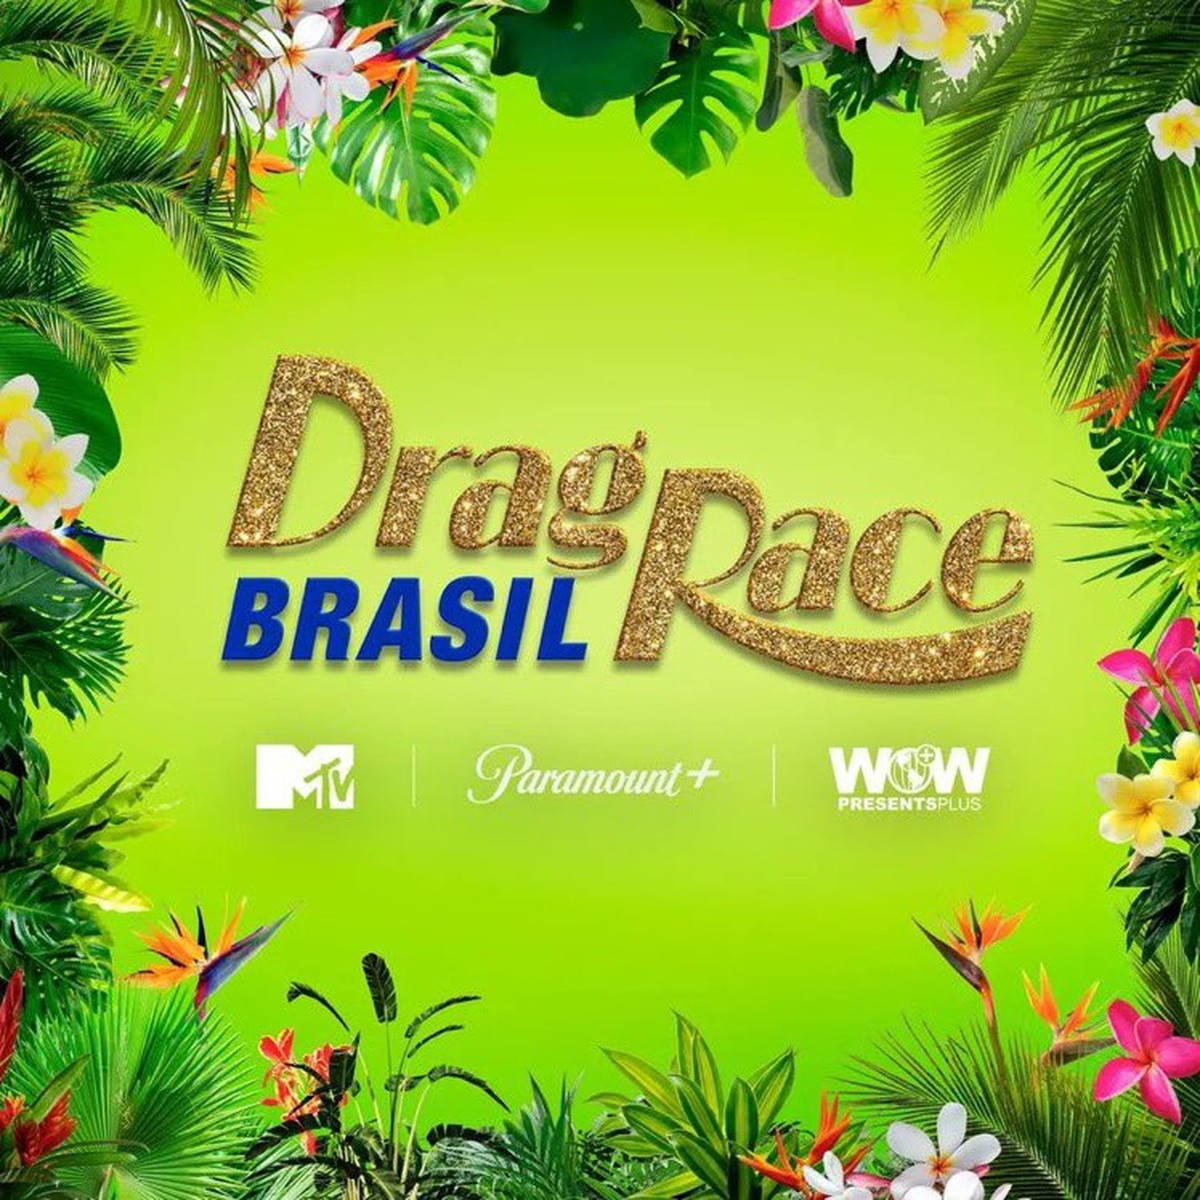 Drag Race Brasil: veja principais rumores sobre nova série do Paramount+